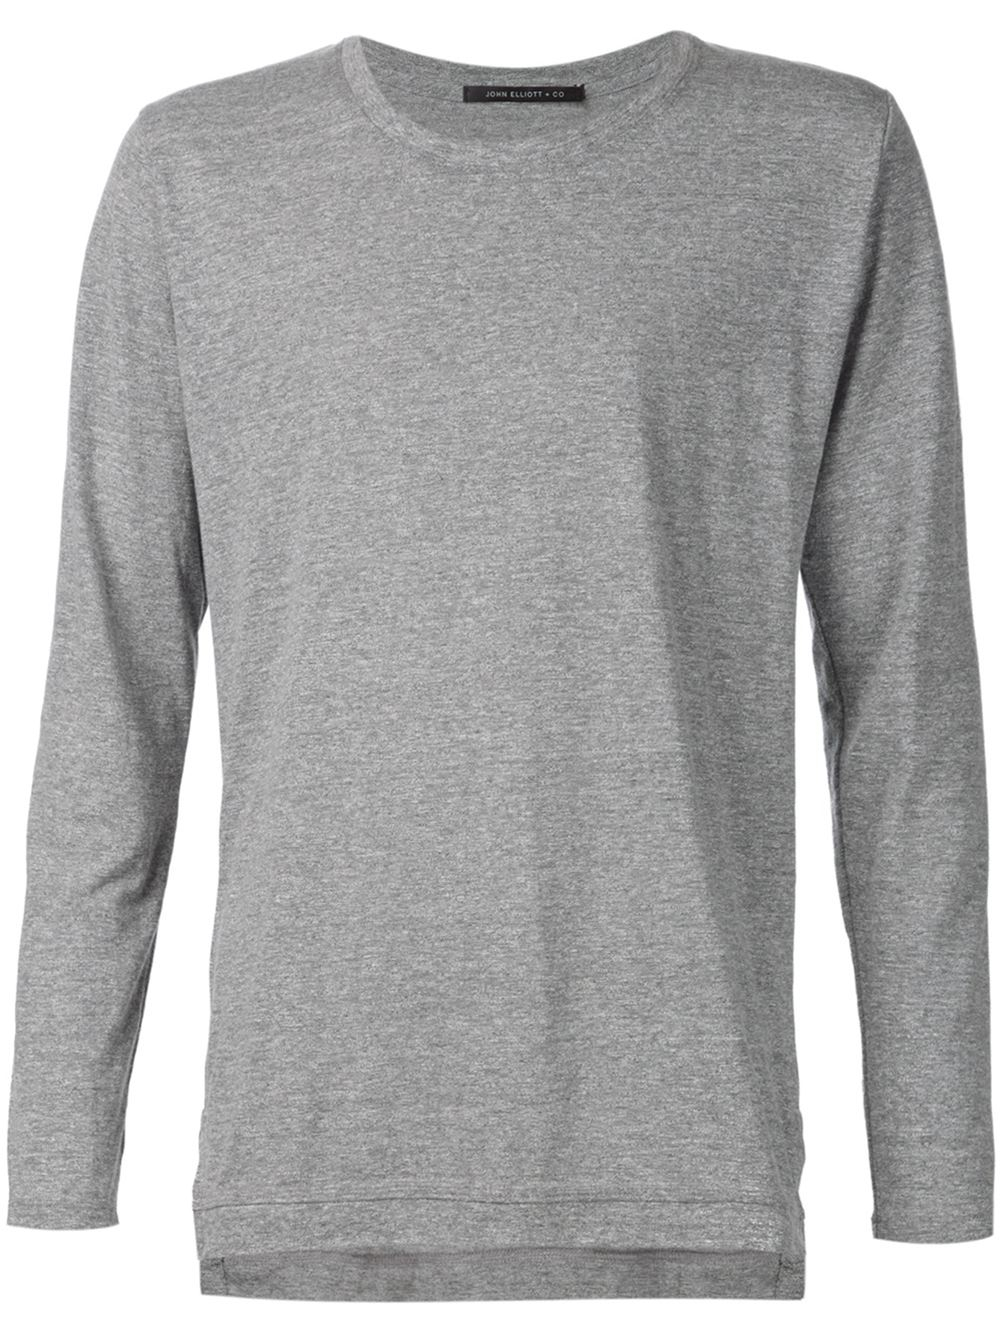 Lyst - John Elliott 'mercer' Long Sleeve T-shirt in Gray for Men